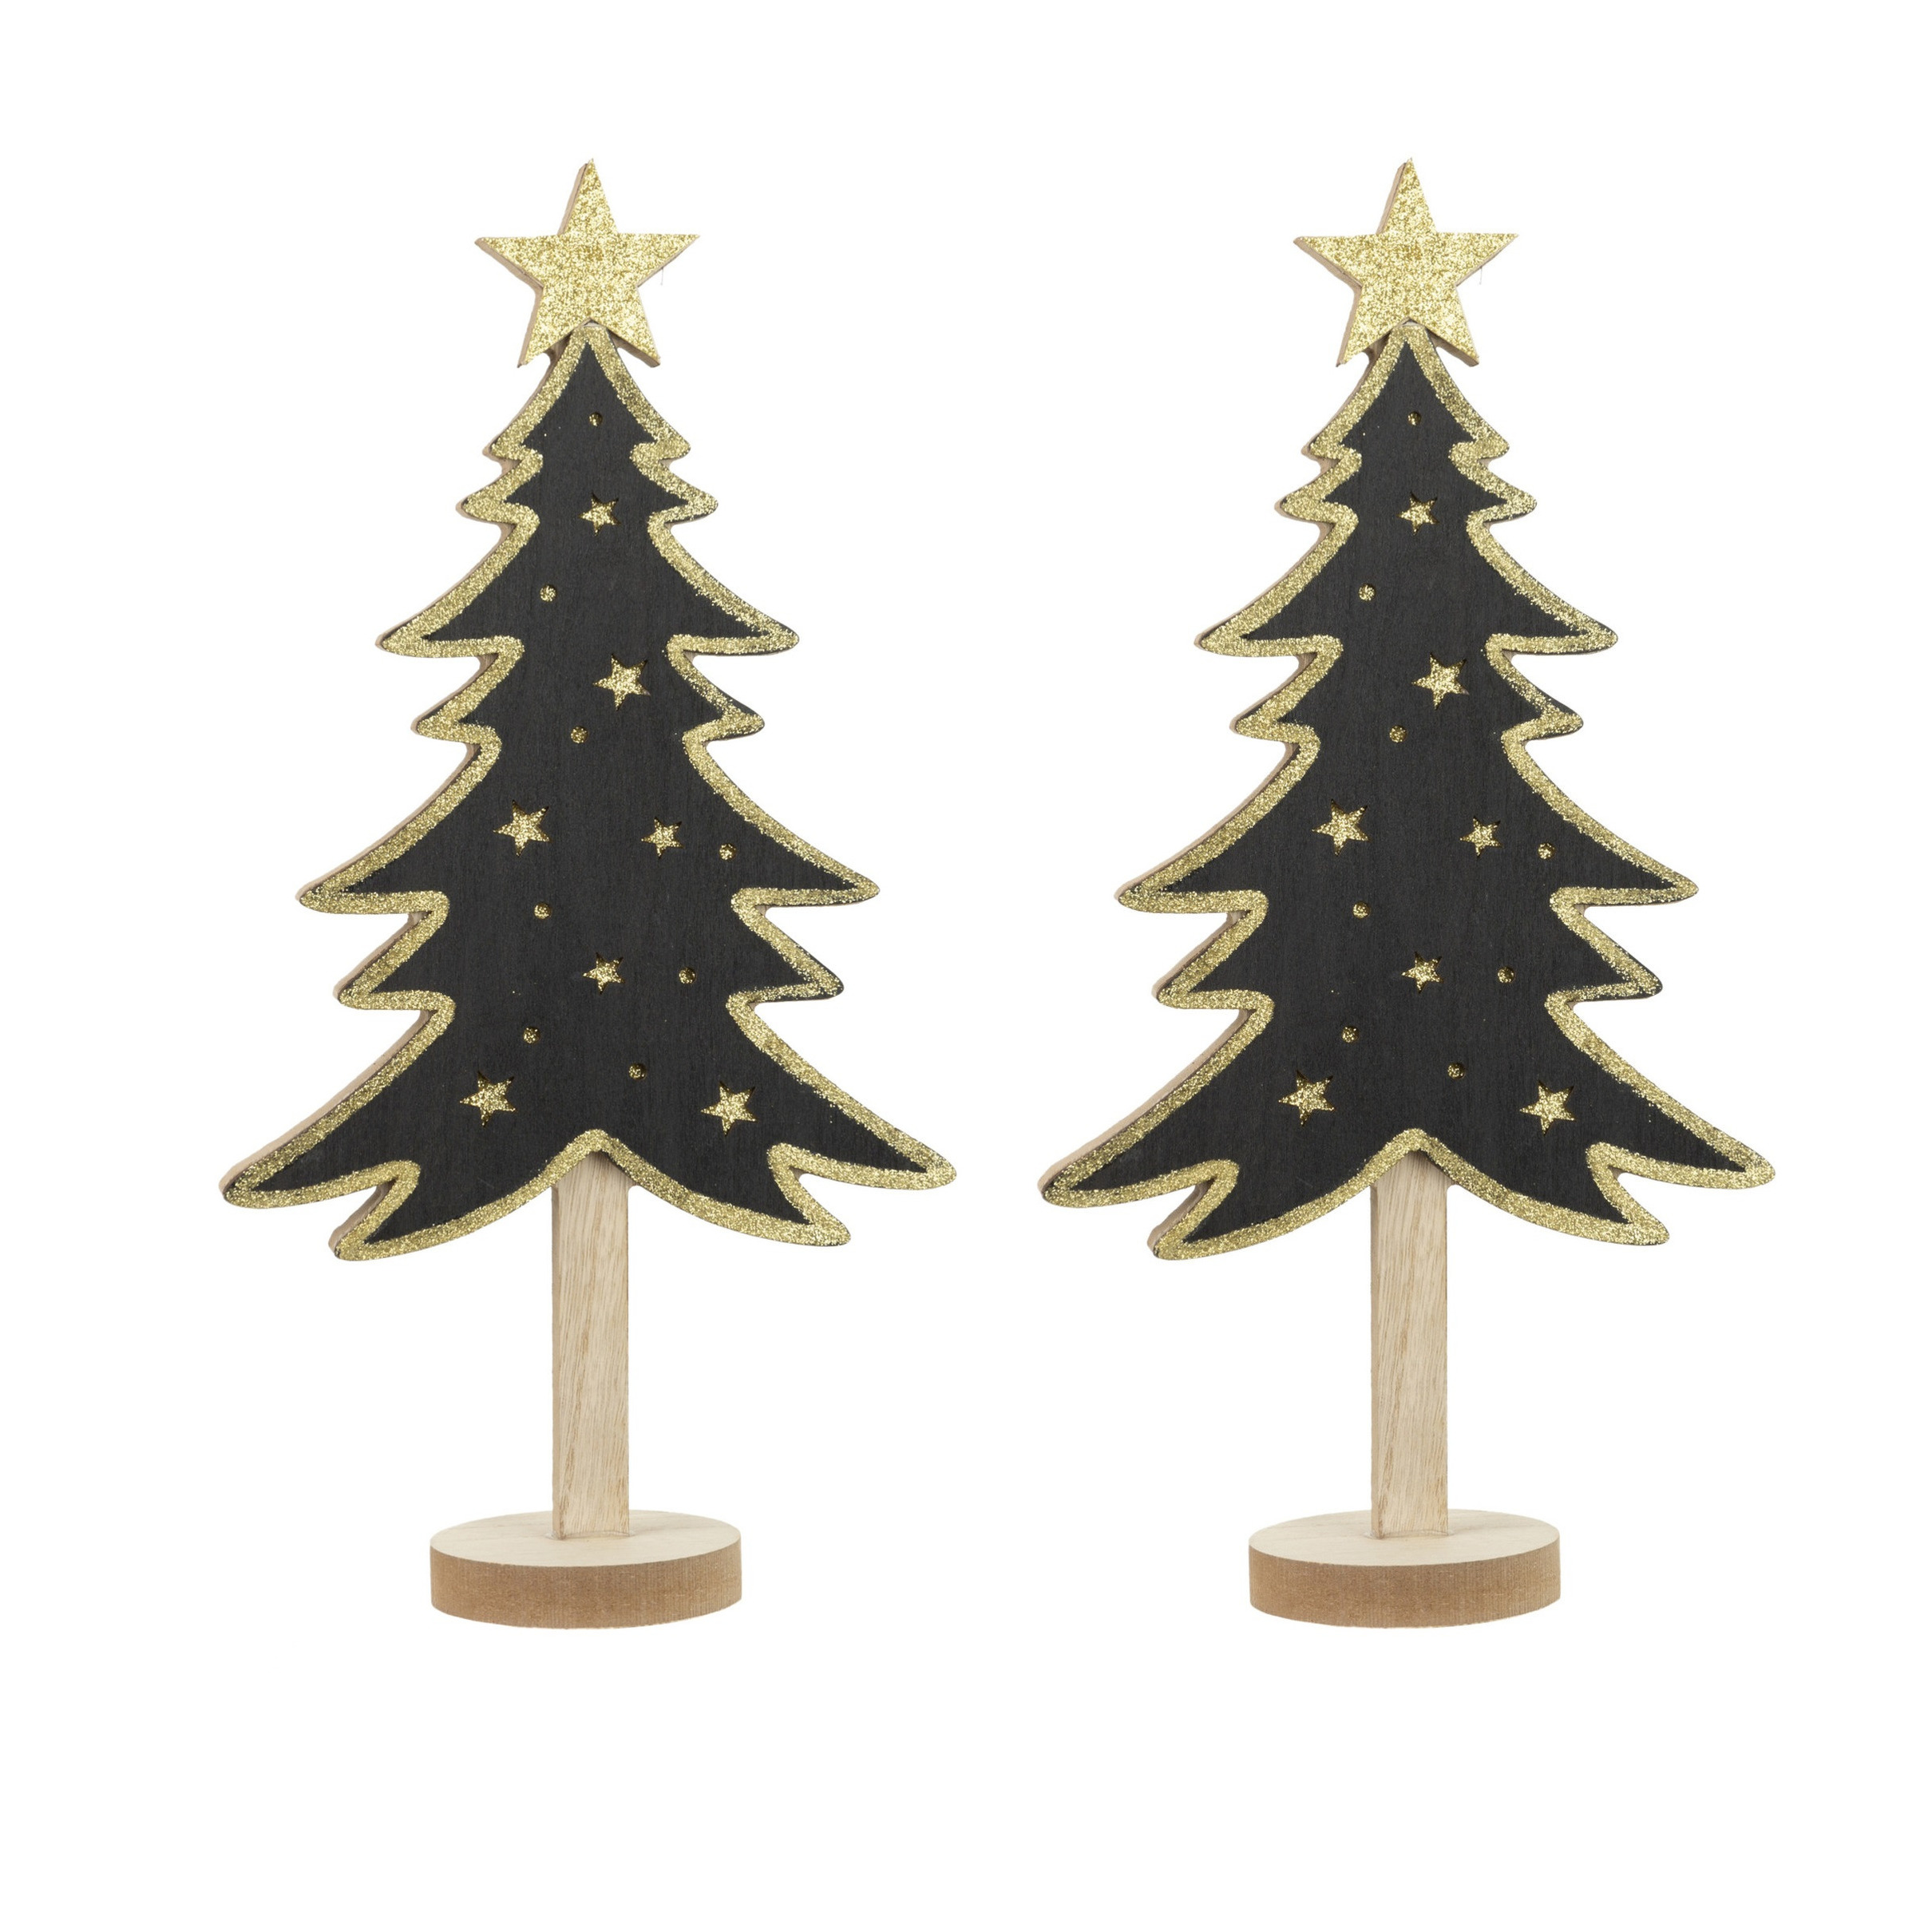 2x stuks kerstdecoratie houten decoratie kerstboom zwart met gouden sterren B18 x H36 cm